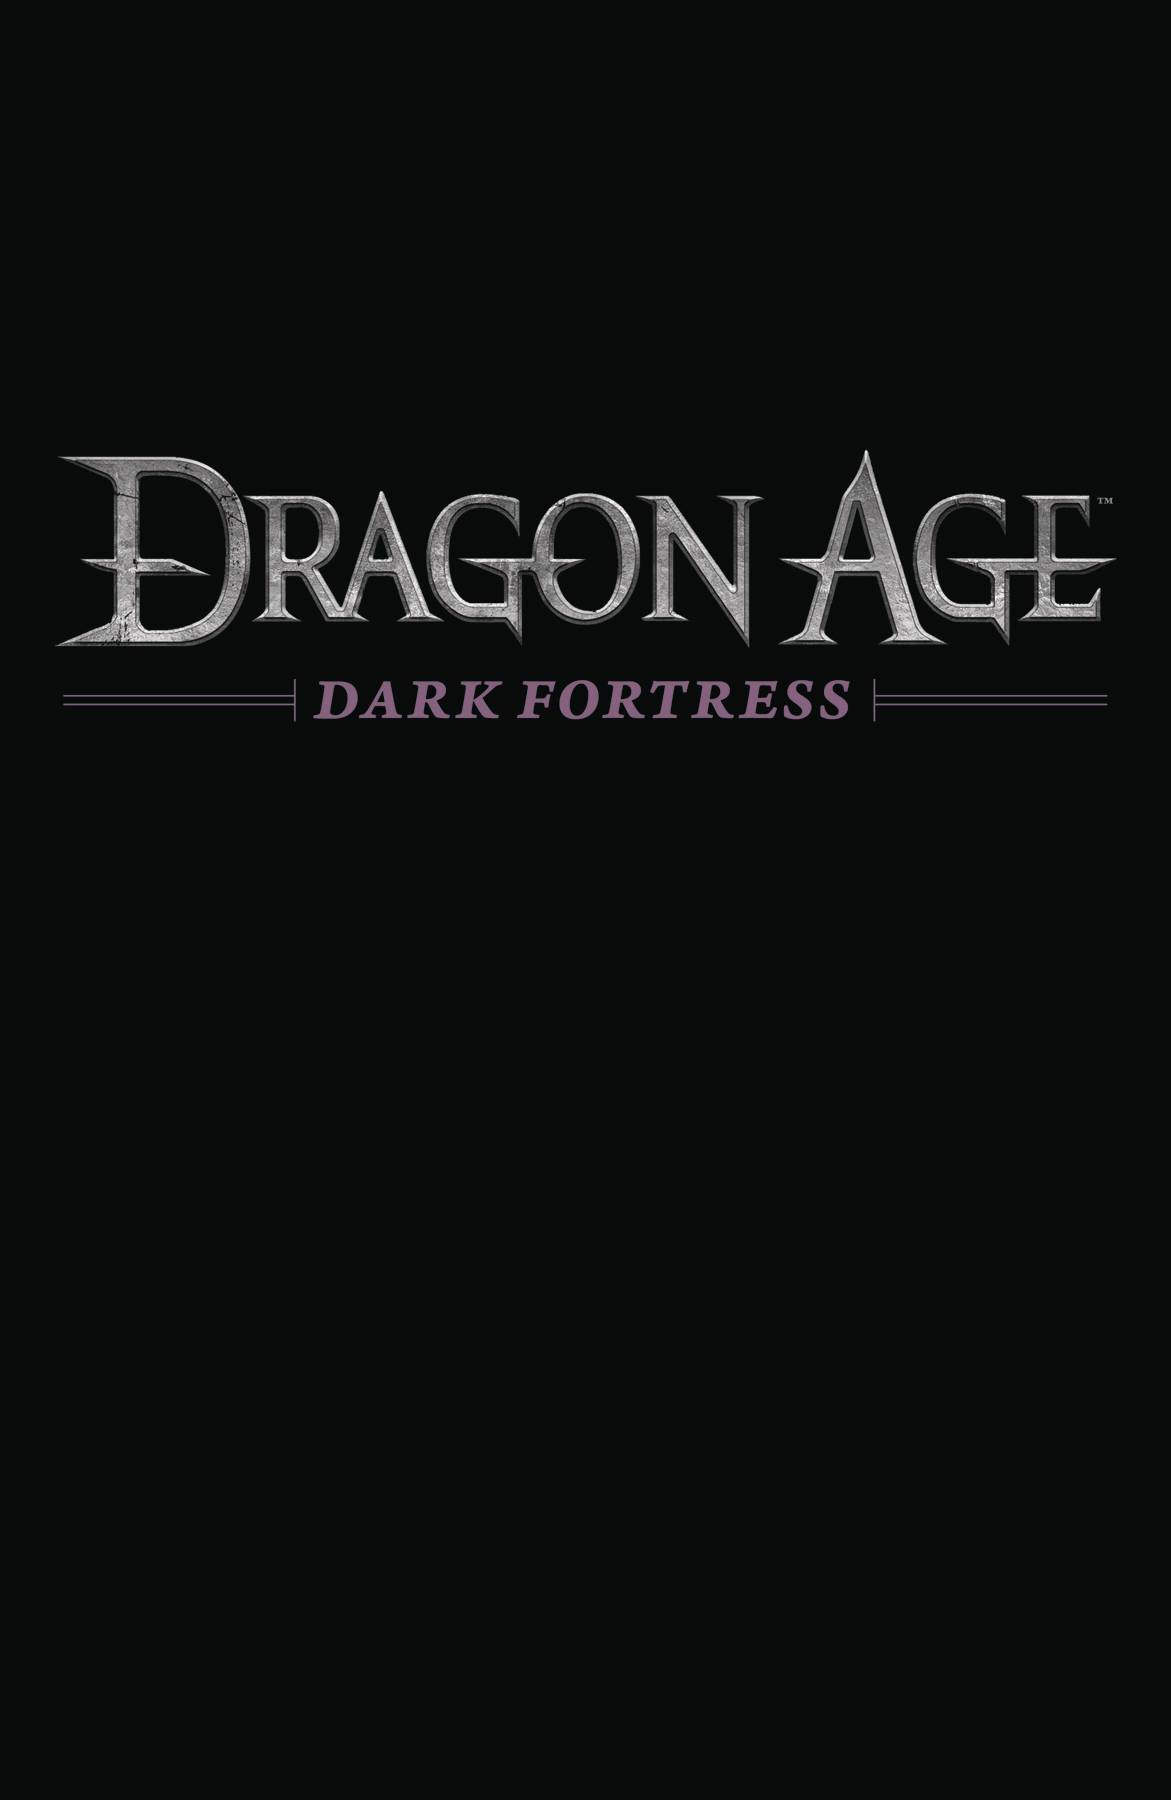 DRAGON AGE DARK FORTRESS